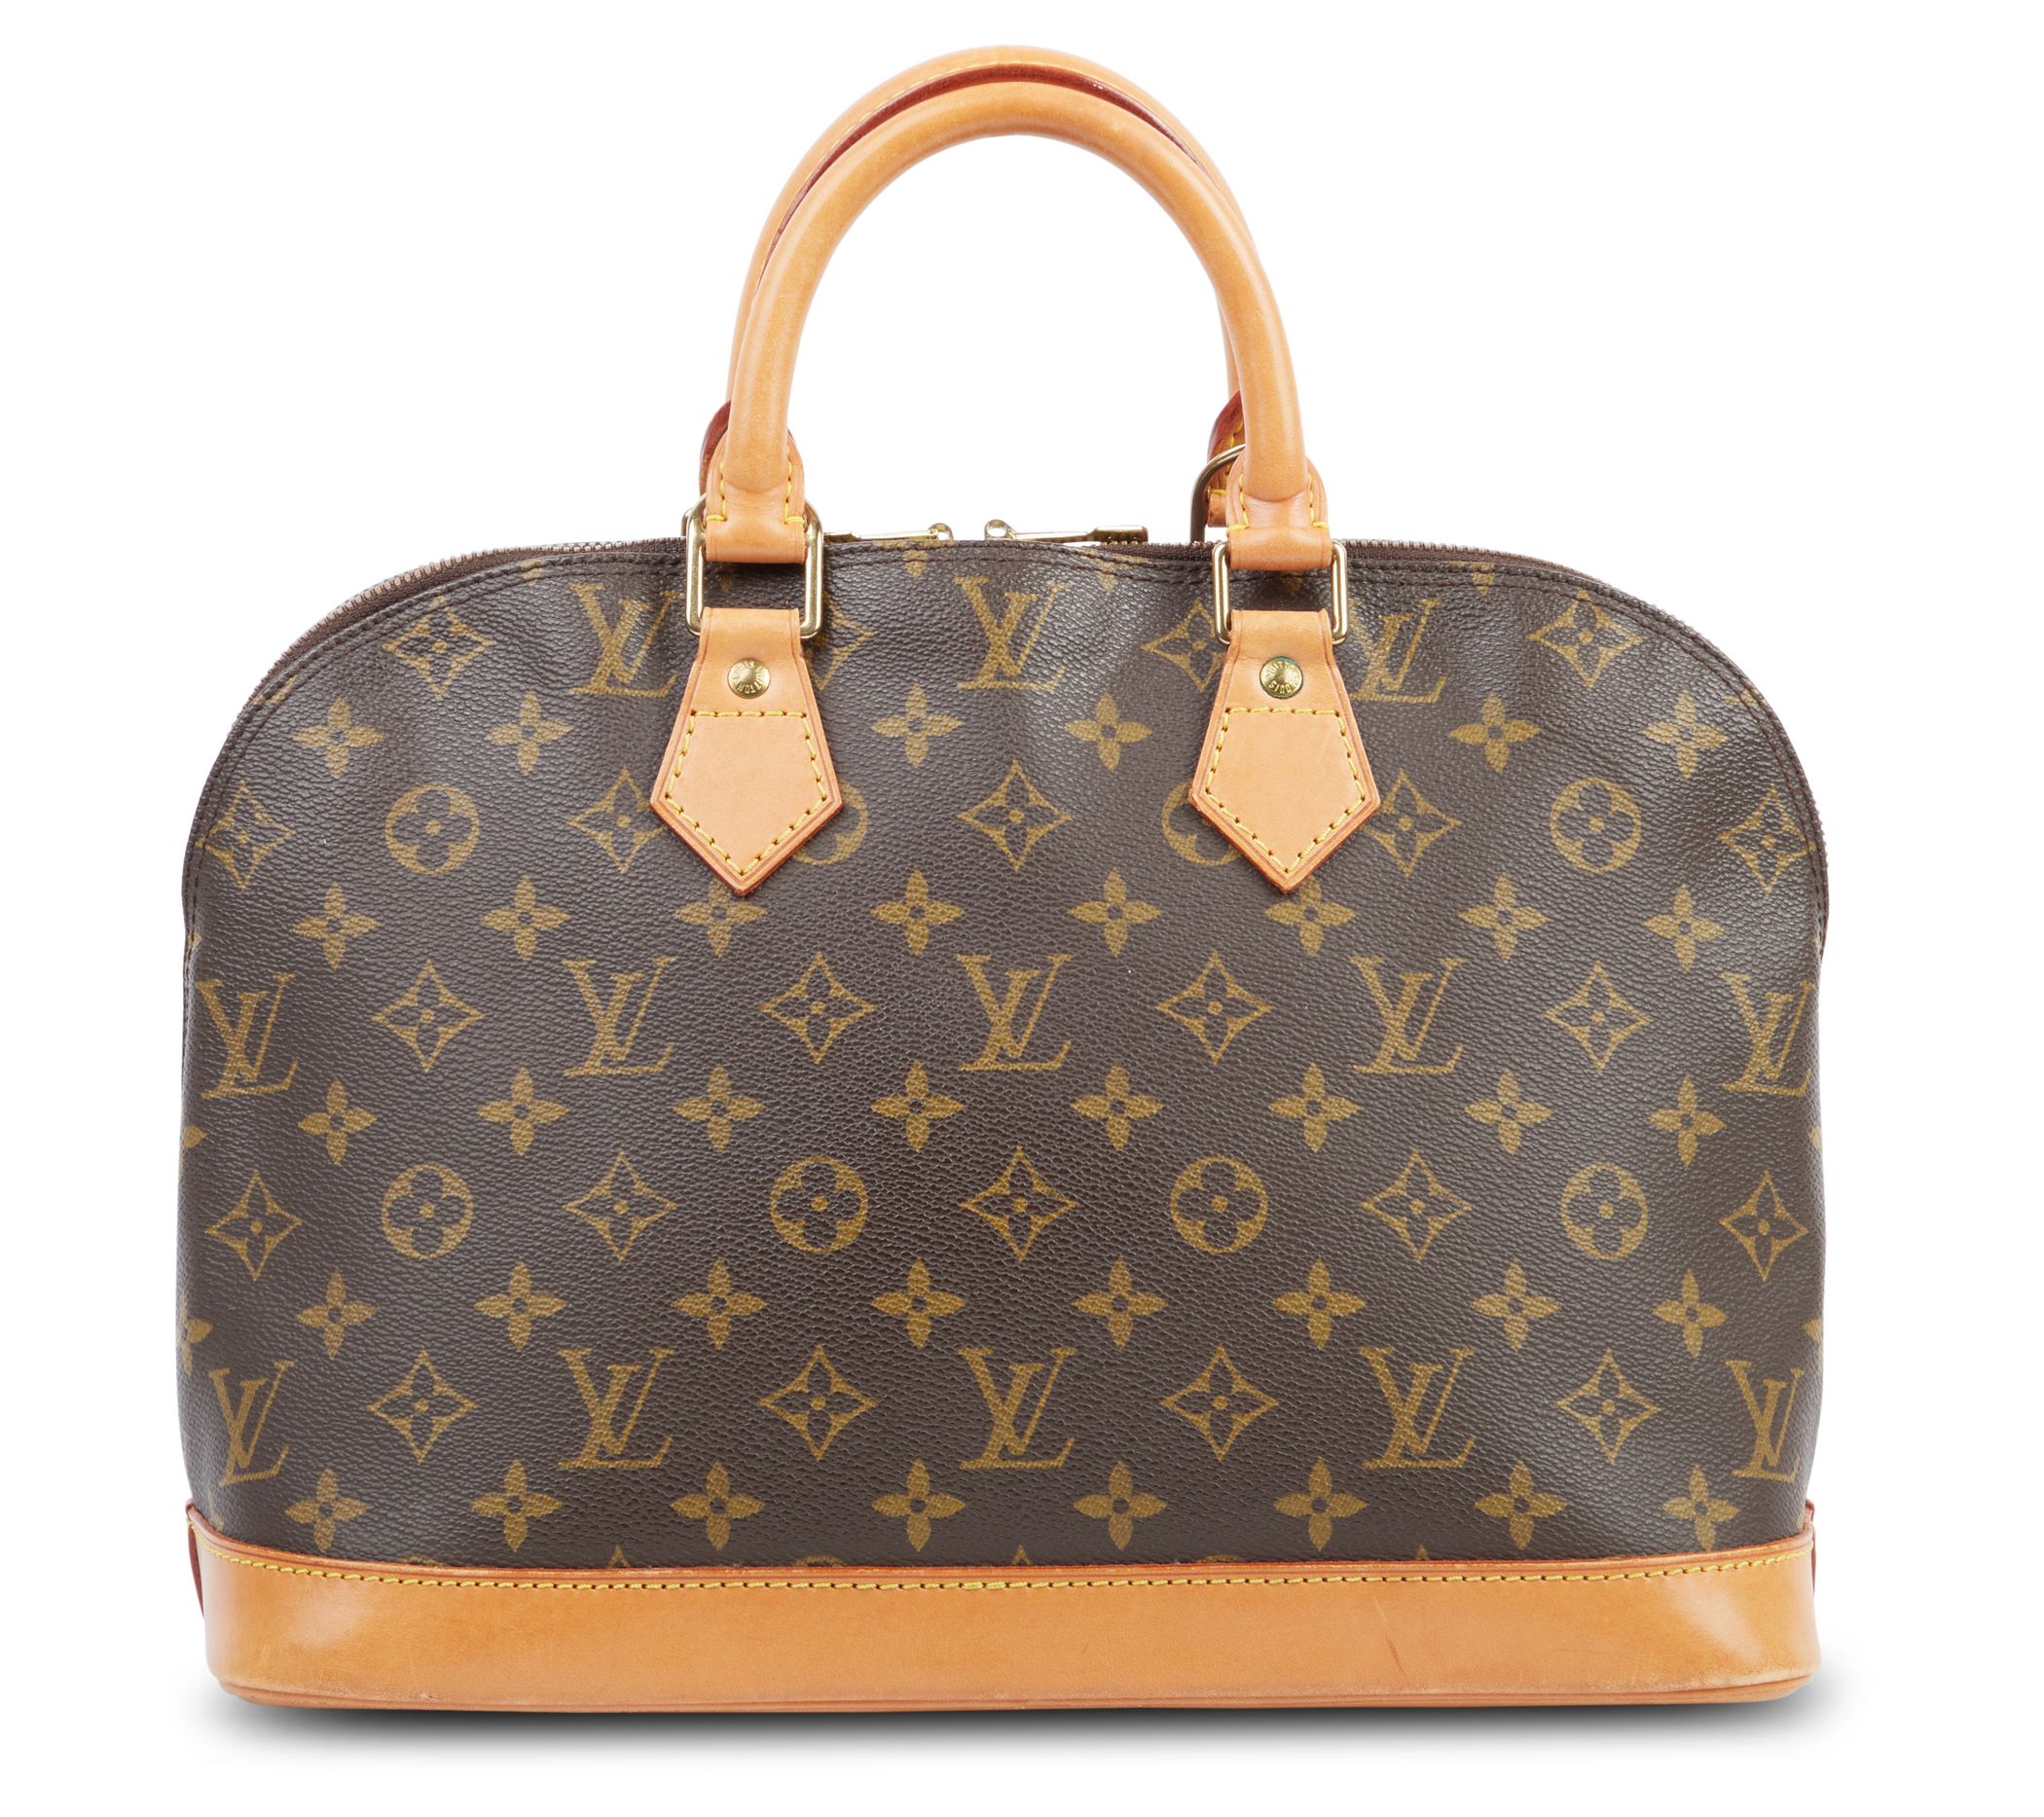 Louis Vuitton Capucines Bag Size Comparison BB PM & MM + What Fits Inside